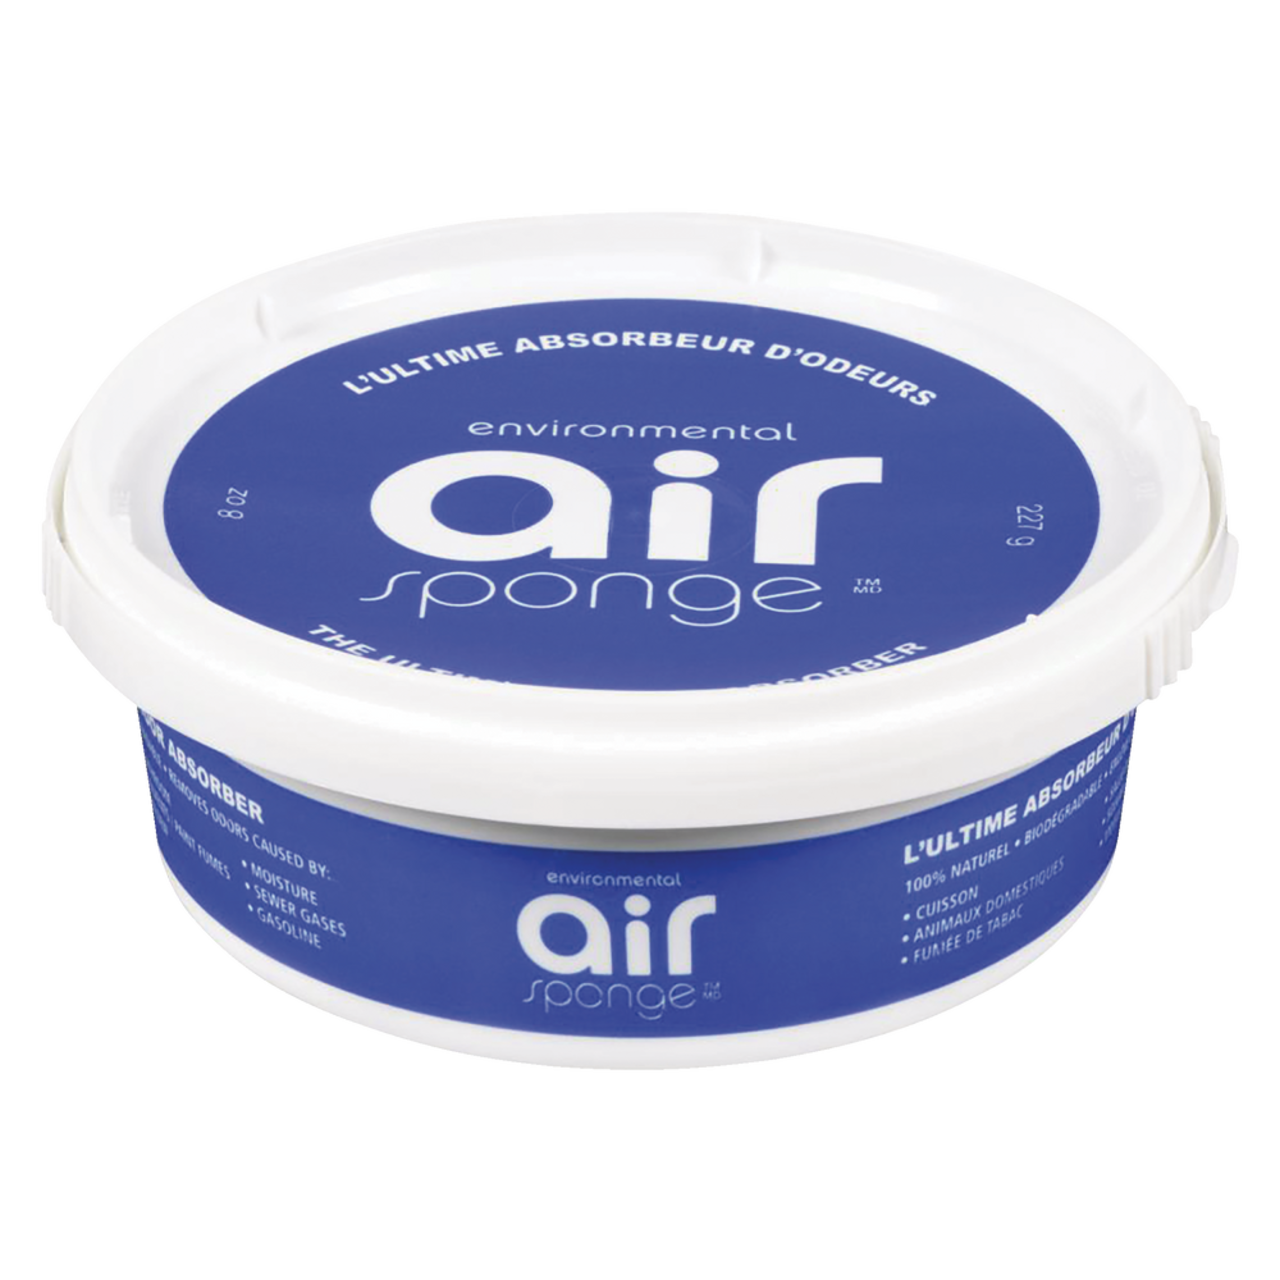 Absorbeur d'odeurs environnementales Air Sponge, 227 g